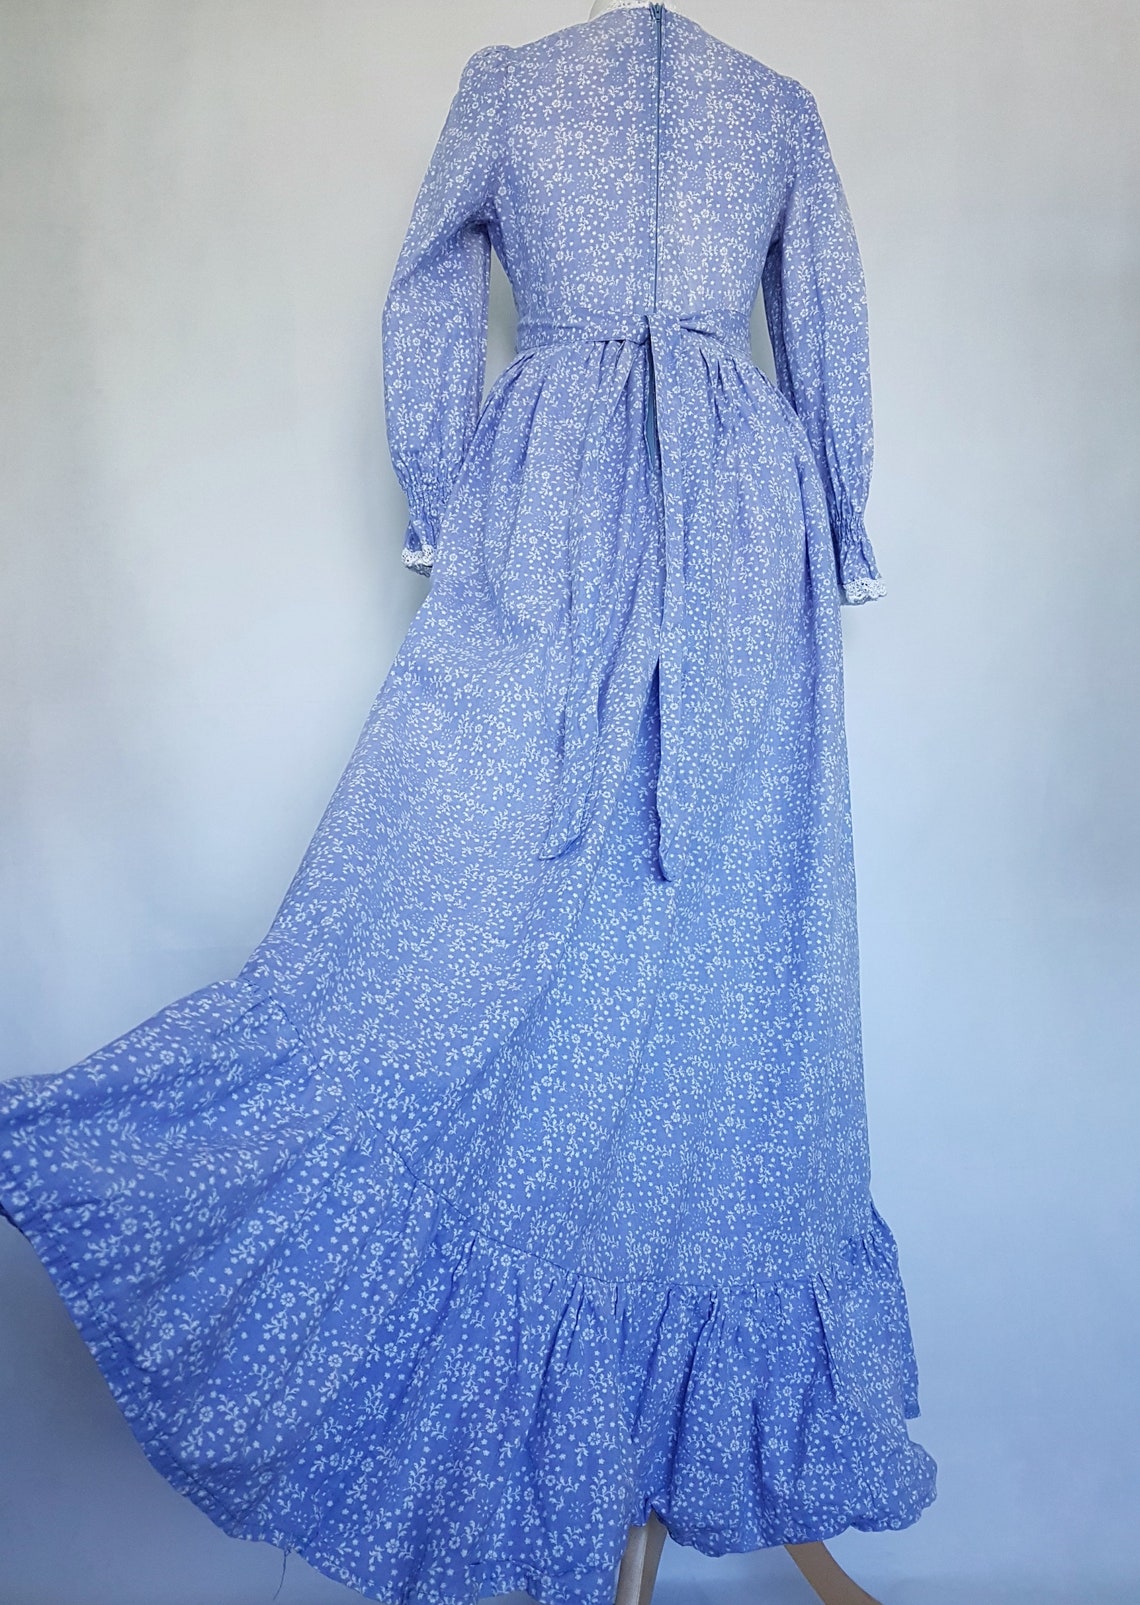 Laura Ashley Full Prairie Style Dress Size UK 10 8 6 Made | Etsy